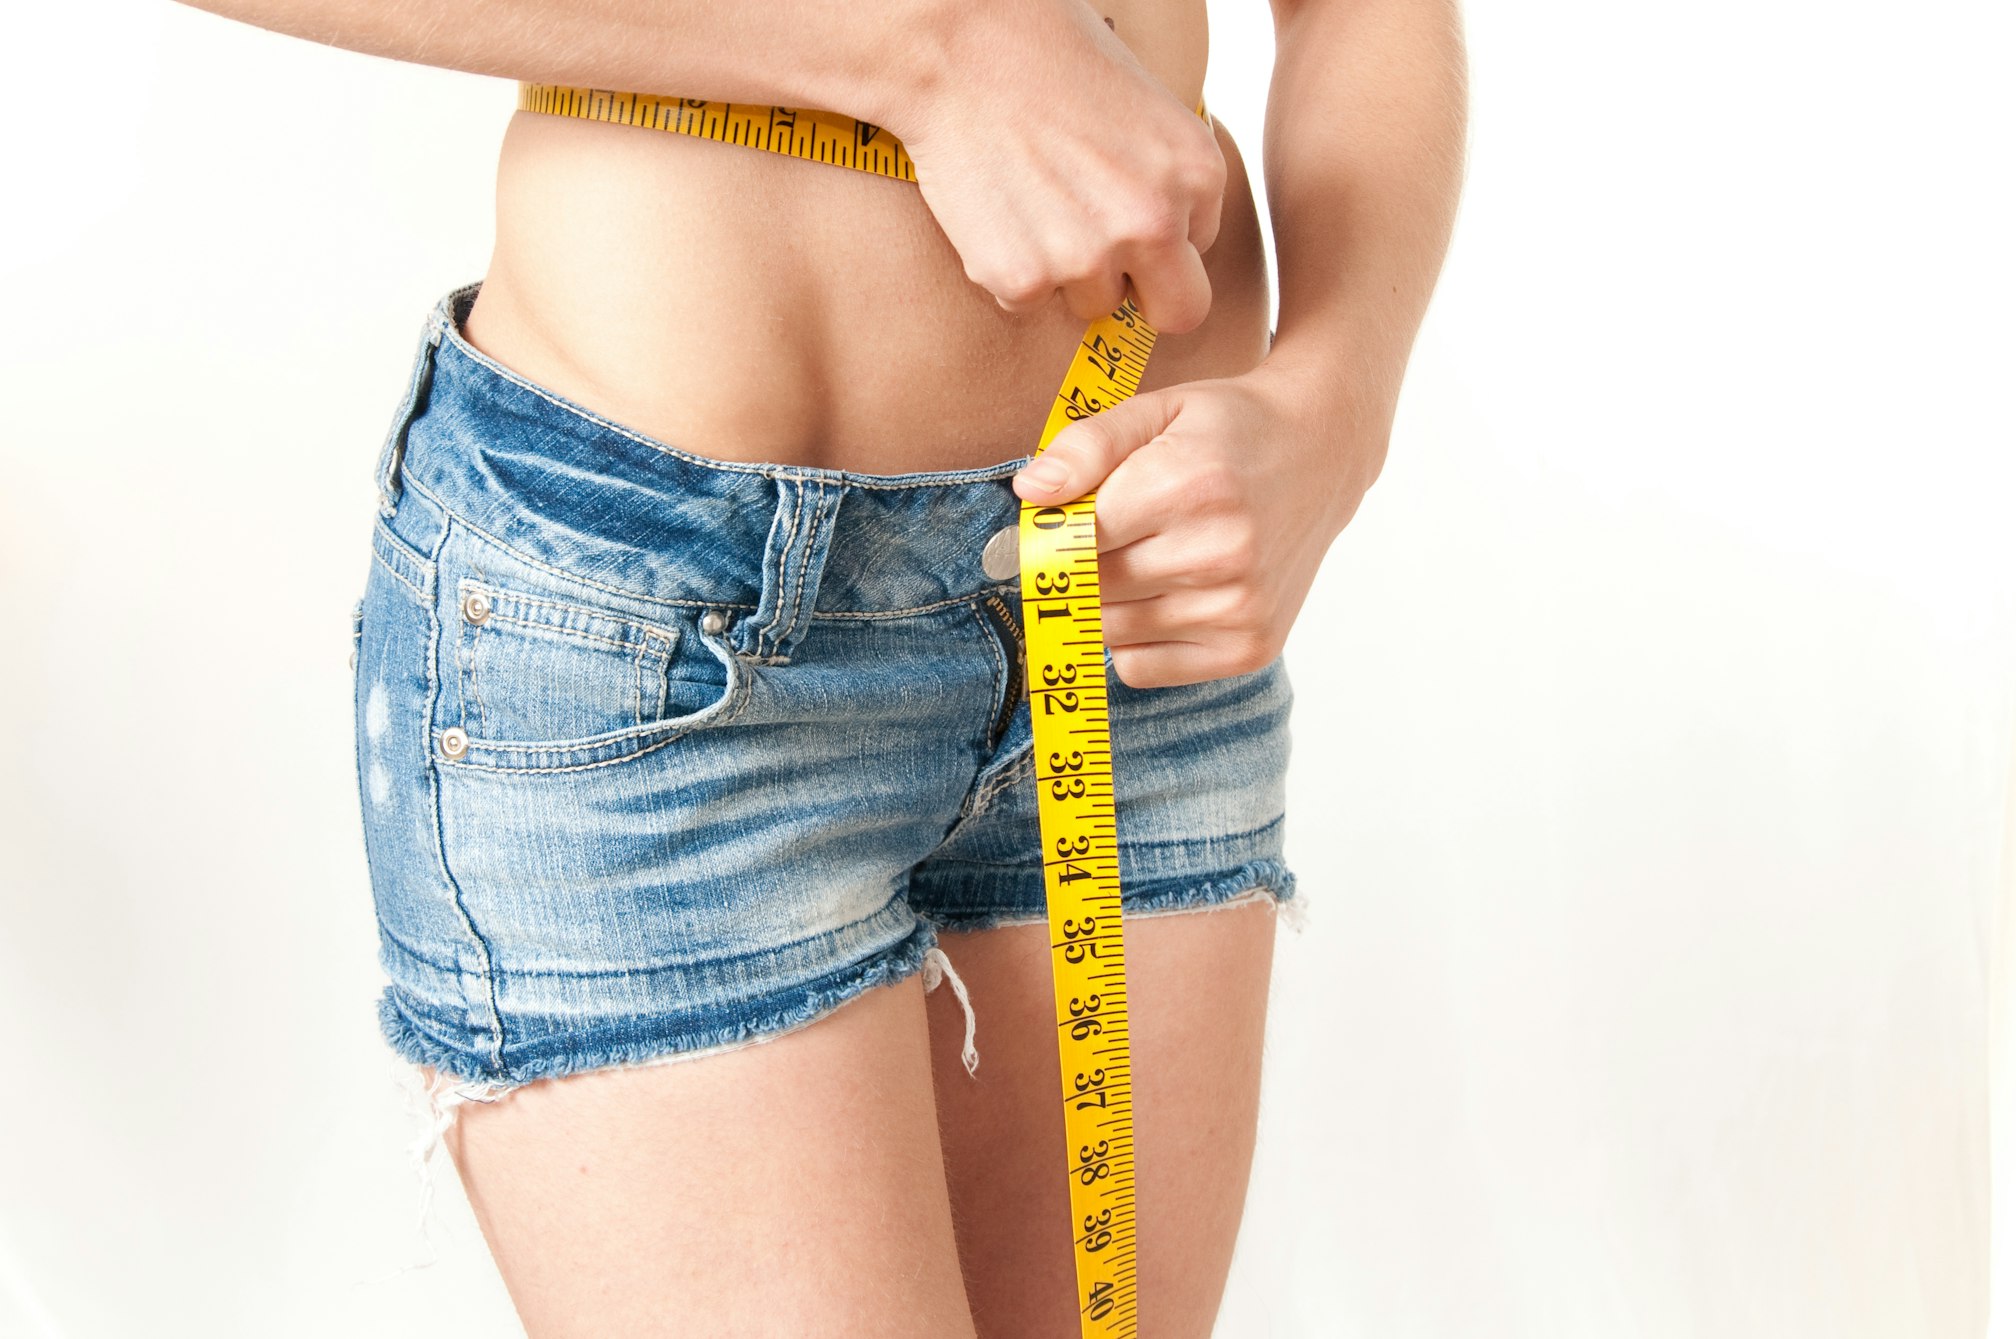 Woman measuring waist wearing denim shorts